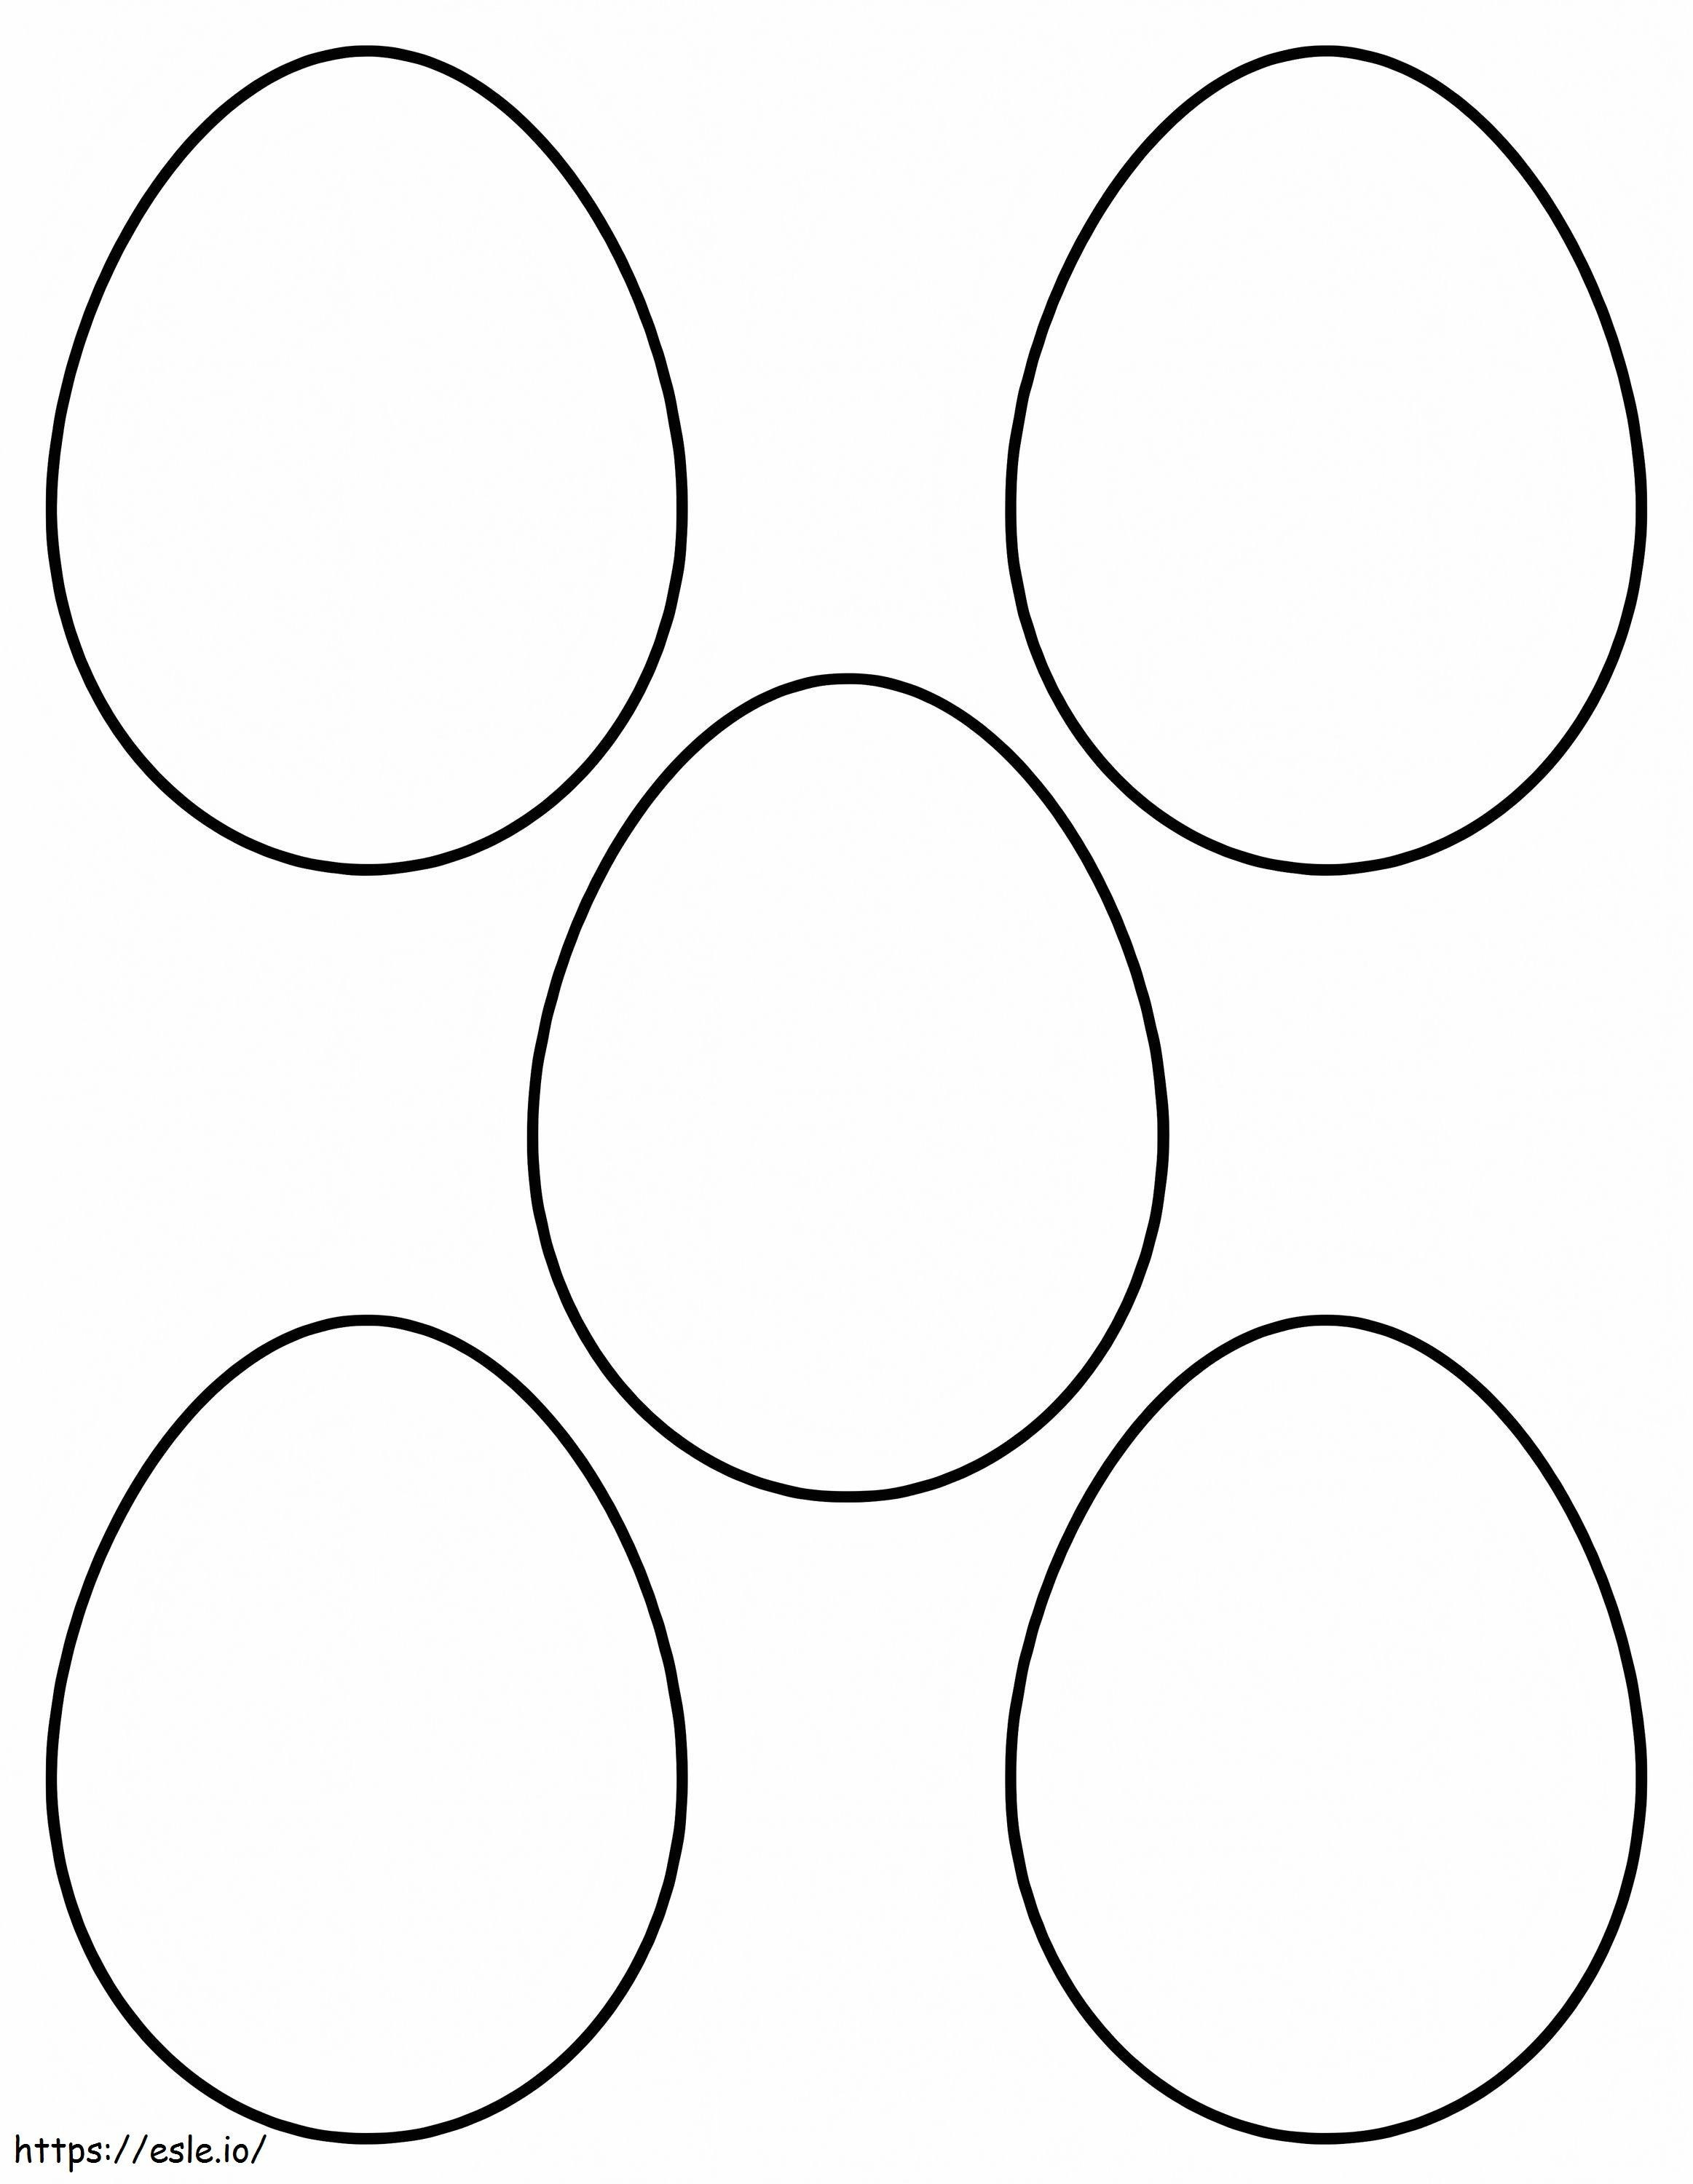 Pięć podstawowych jaj kolorowanka